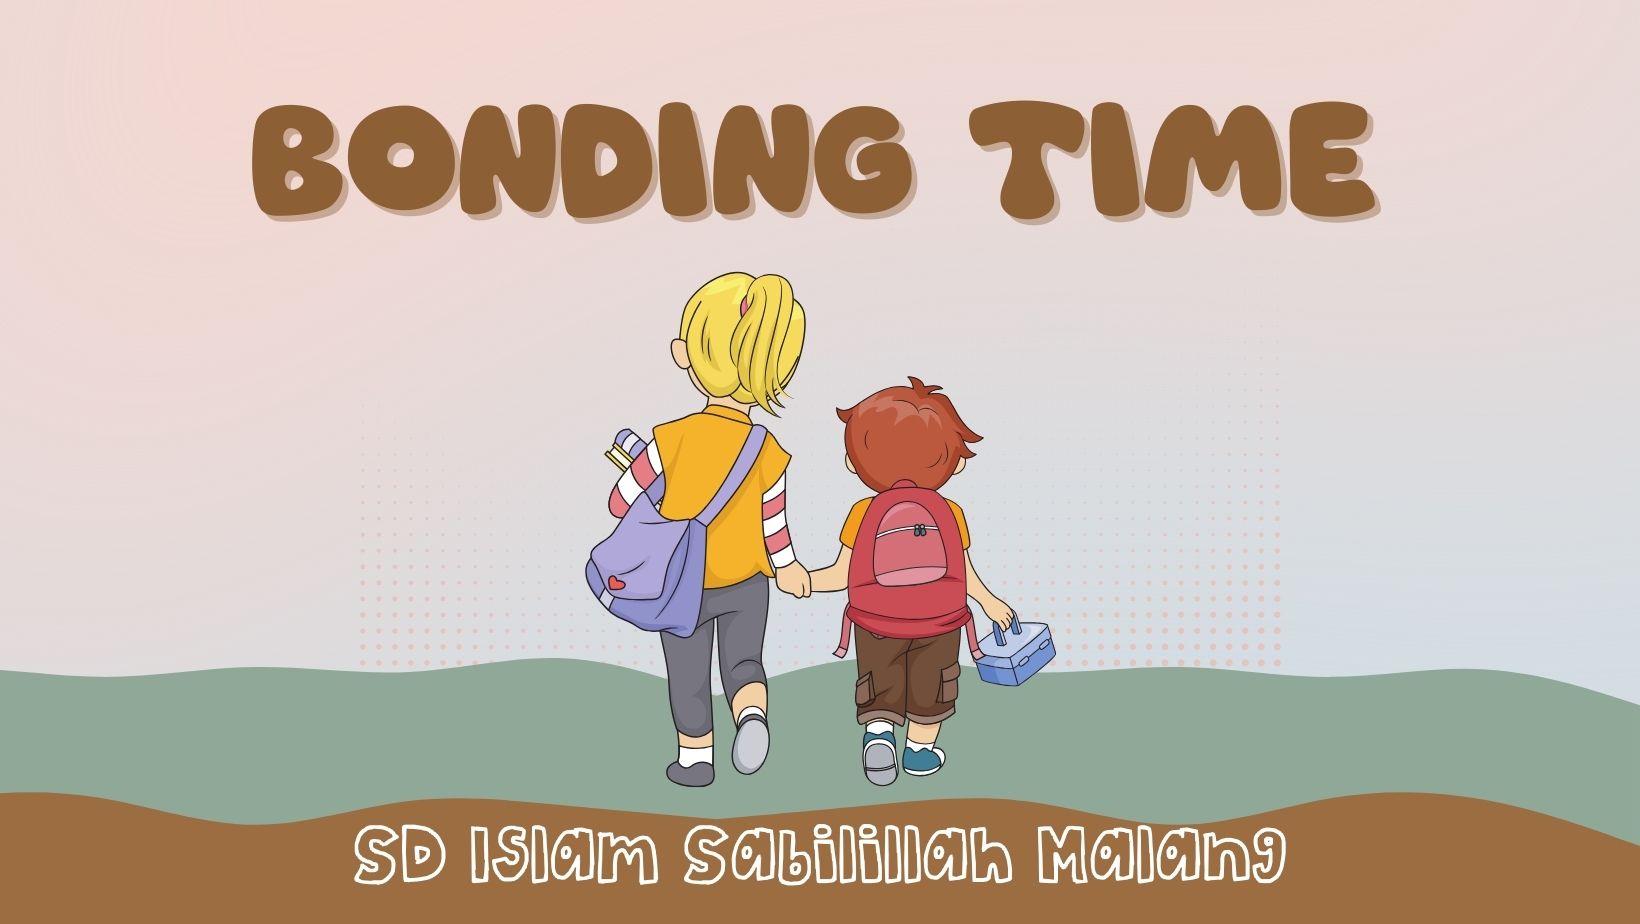 Bonding Time - I